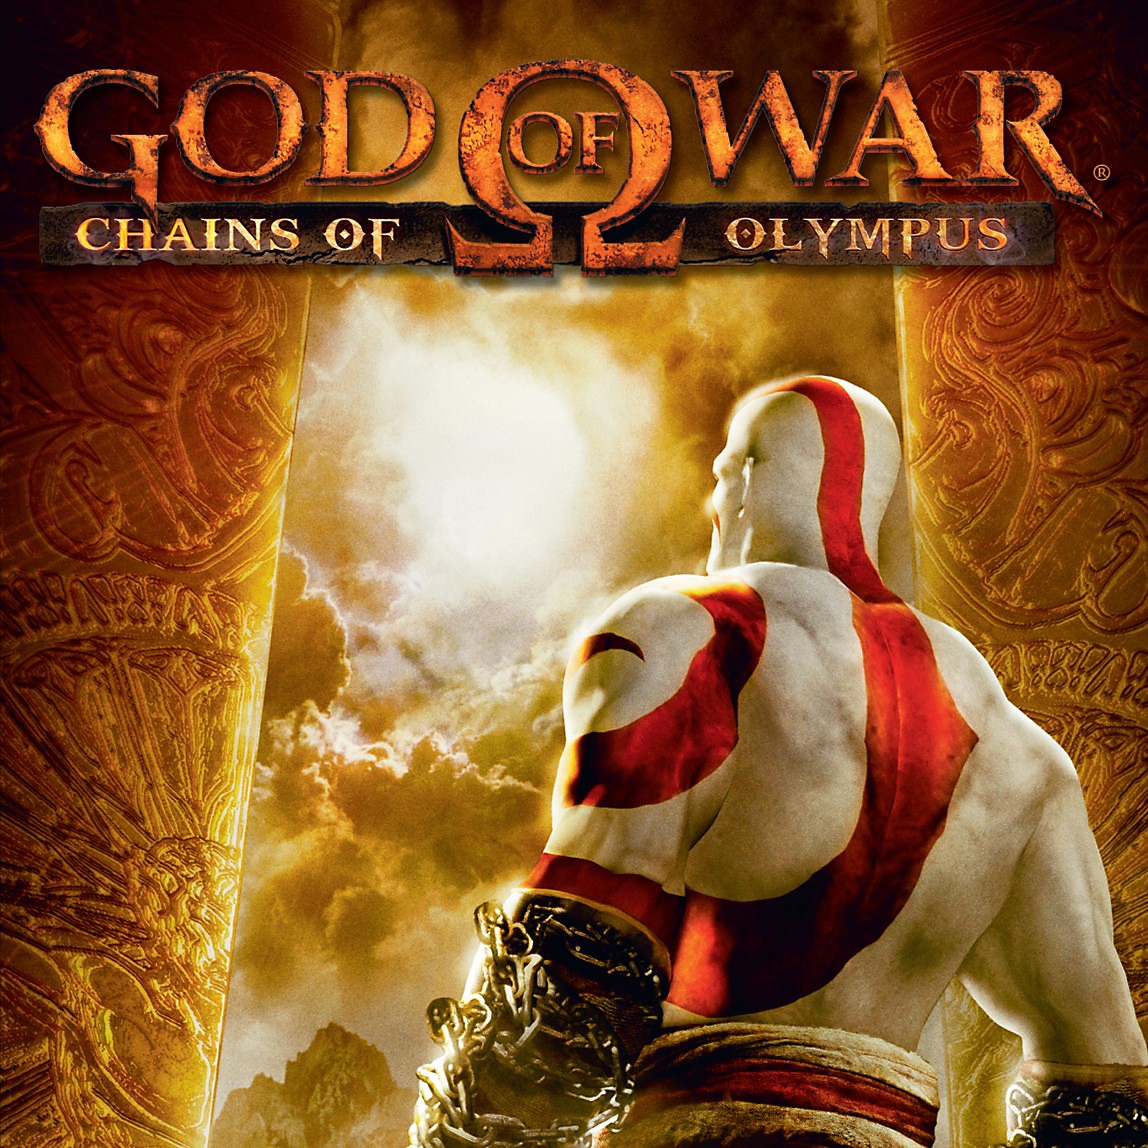 God of War: Ascension - Arte de tienda